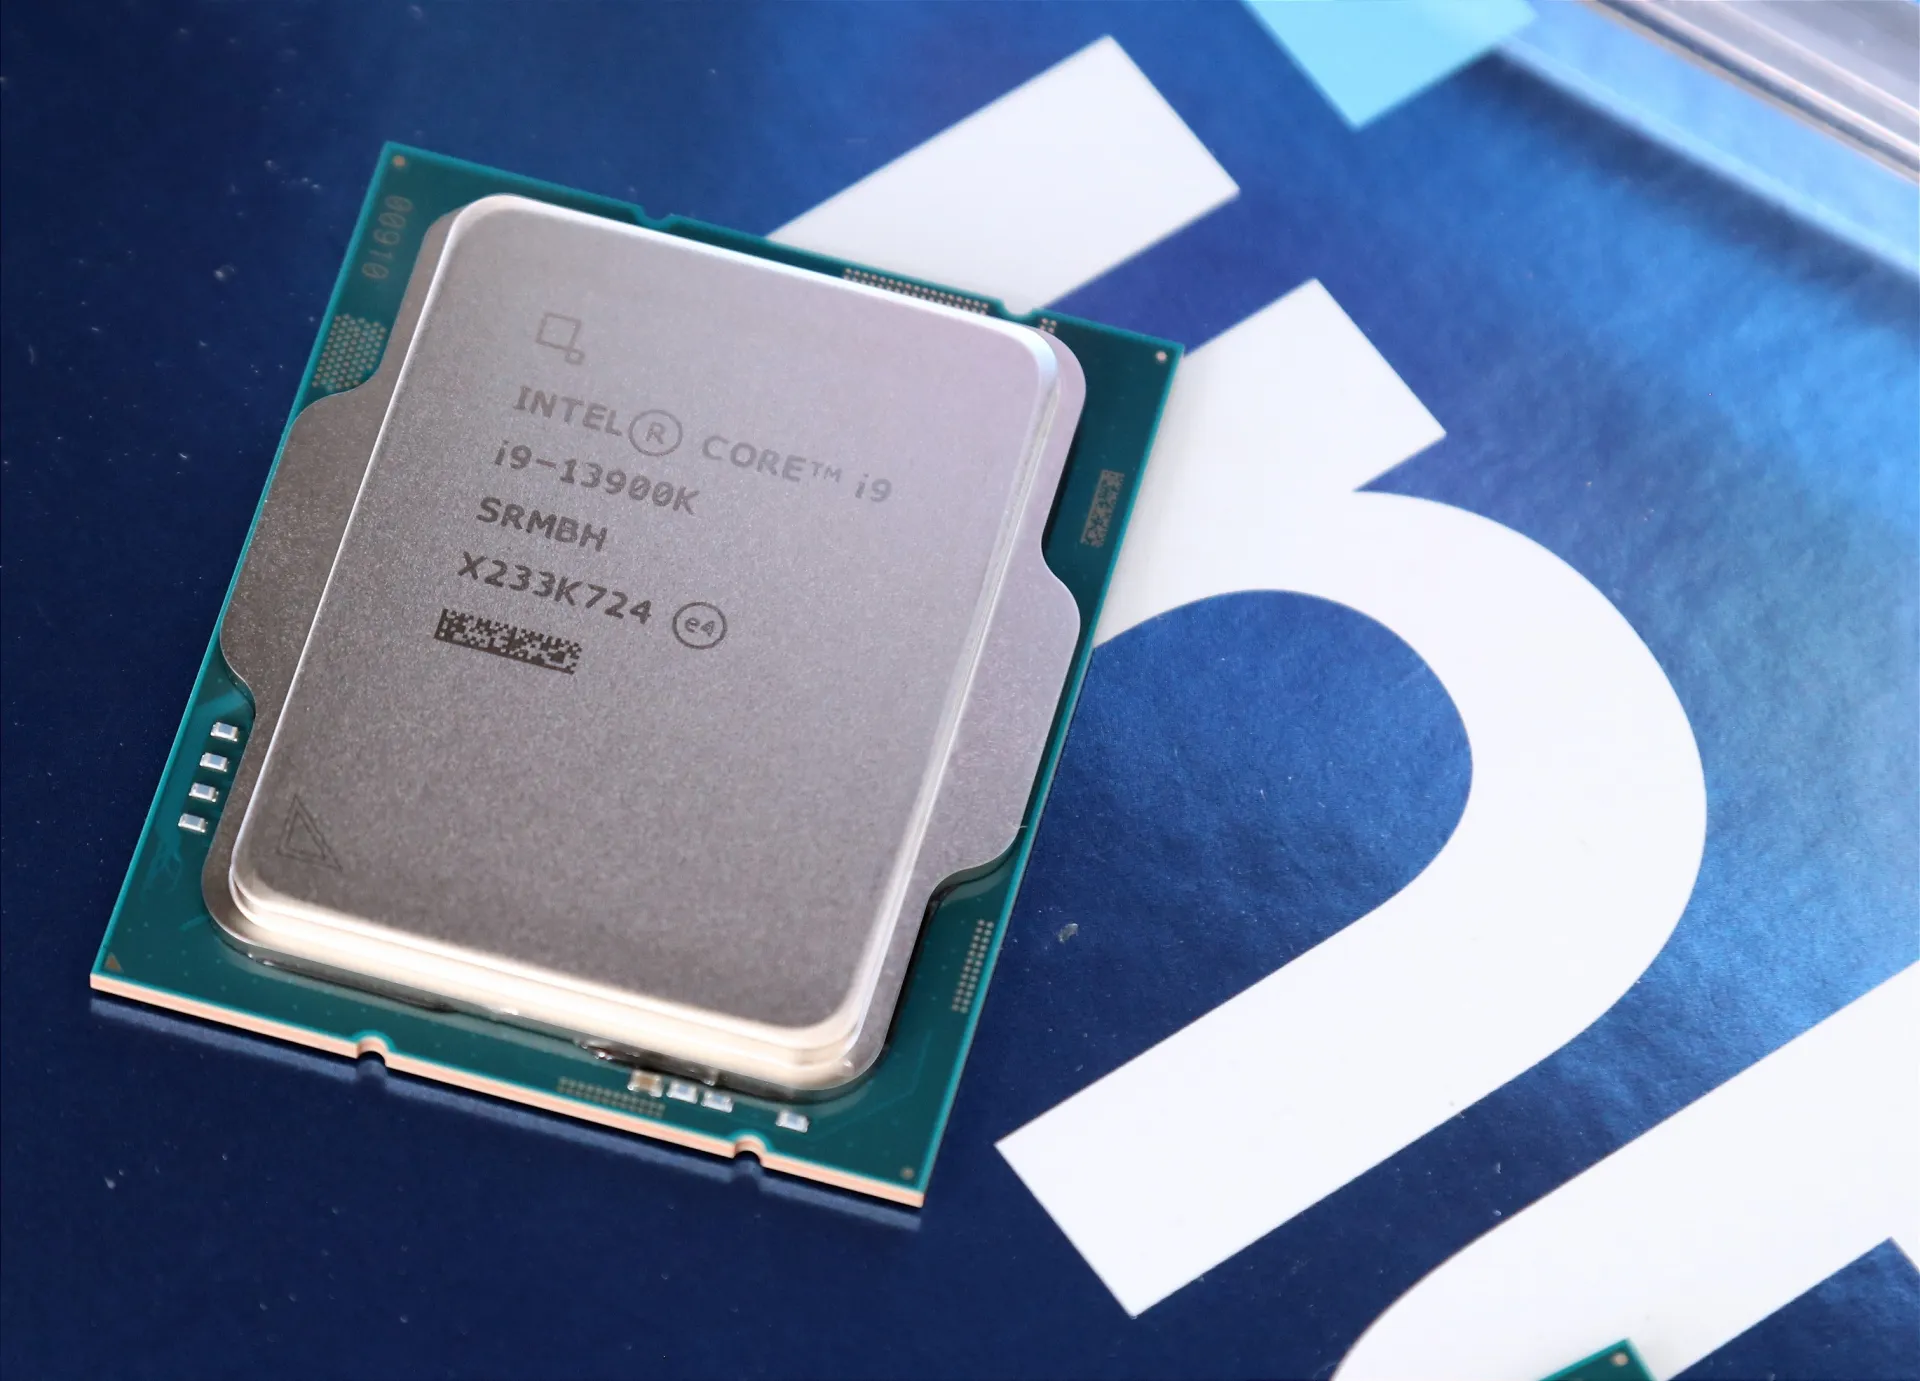 Inestabilidad en procesadores Intel, ¿qué está pasando?